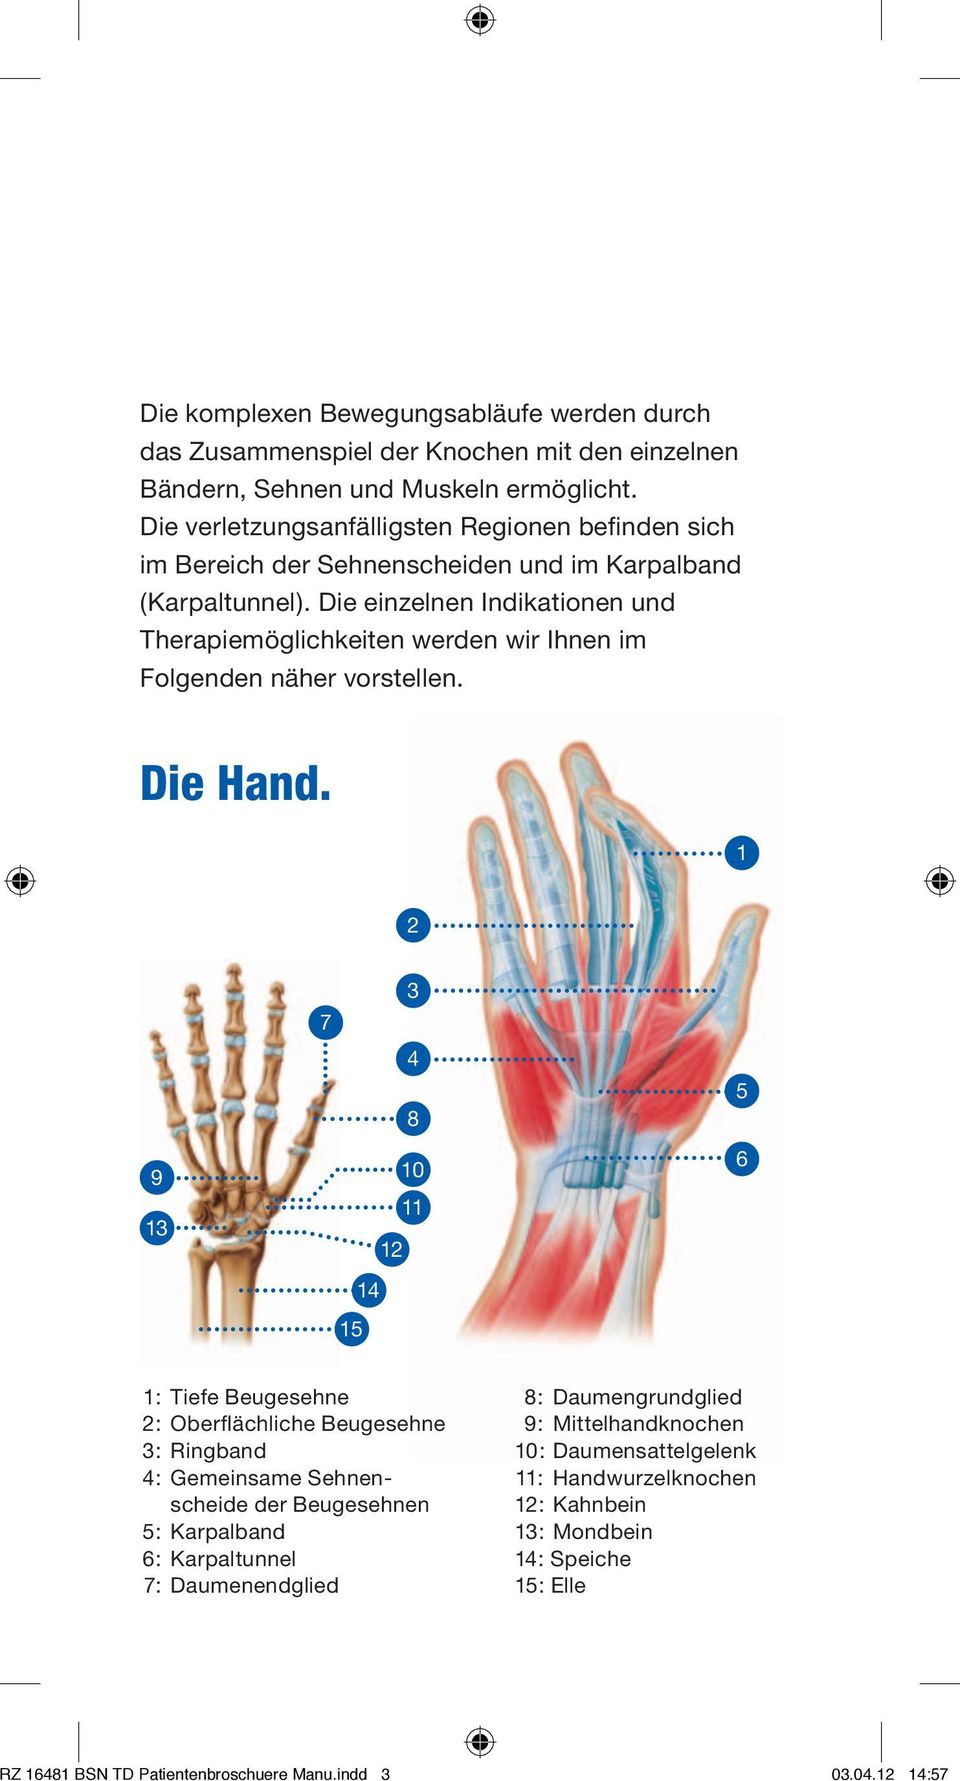 Die einzelnen Indikationen und Therapiemöglichkeiten werden wir Ihnen im Folgenden näher vorstellen. Die Hand.